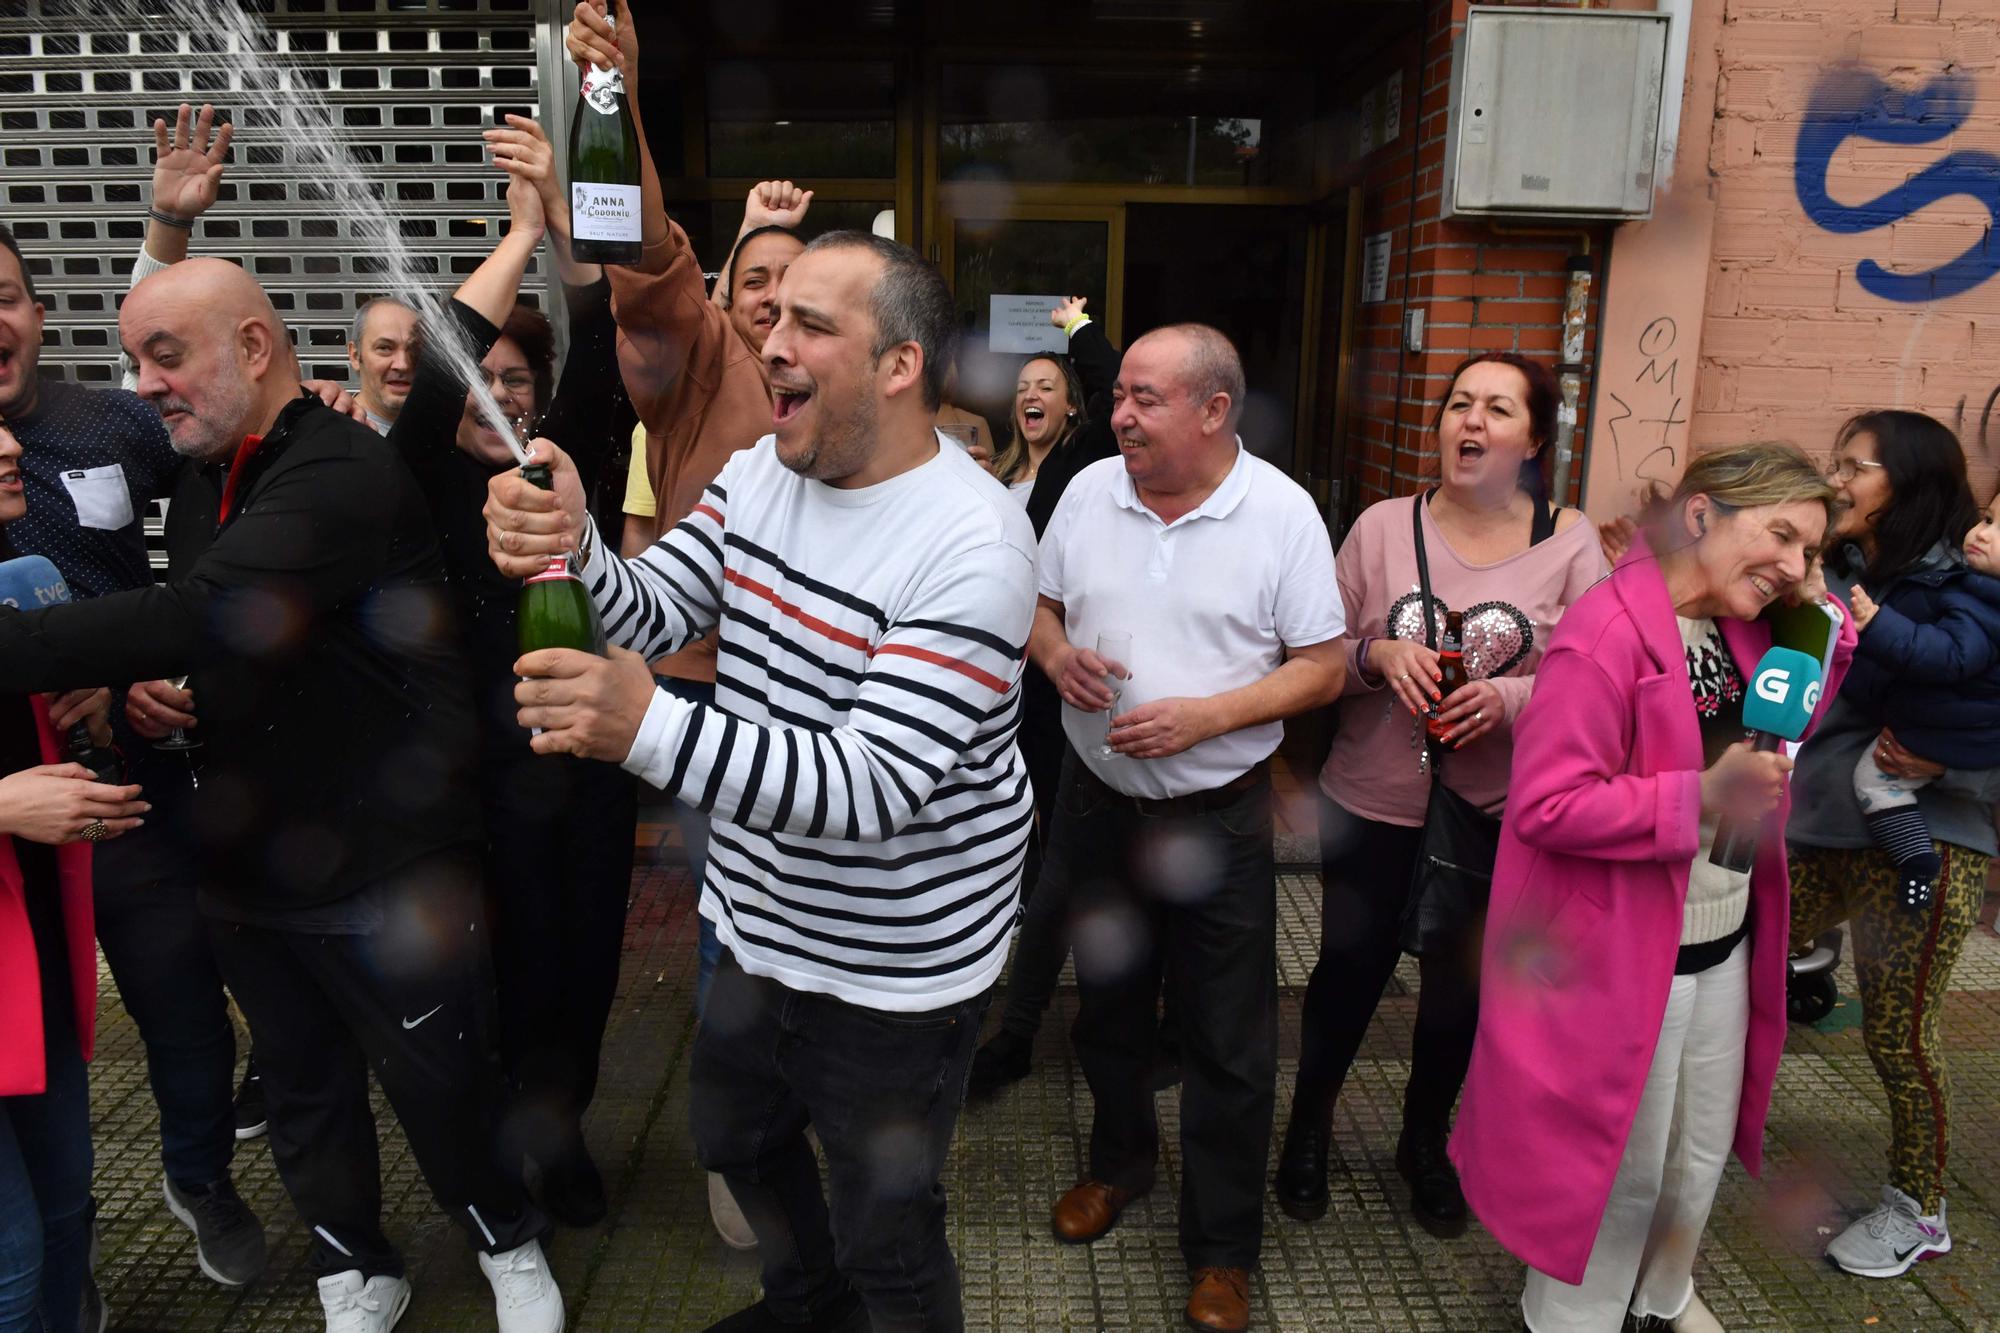 El Gordo cae en A Coruña: El primer premio de la Lotería de Navidad deja 180 millones entre la calle Barcelona y El Gaucho I